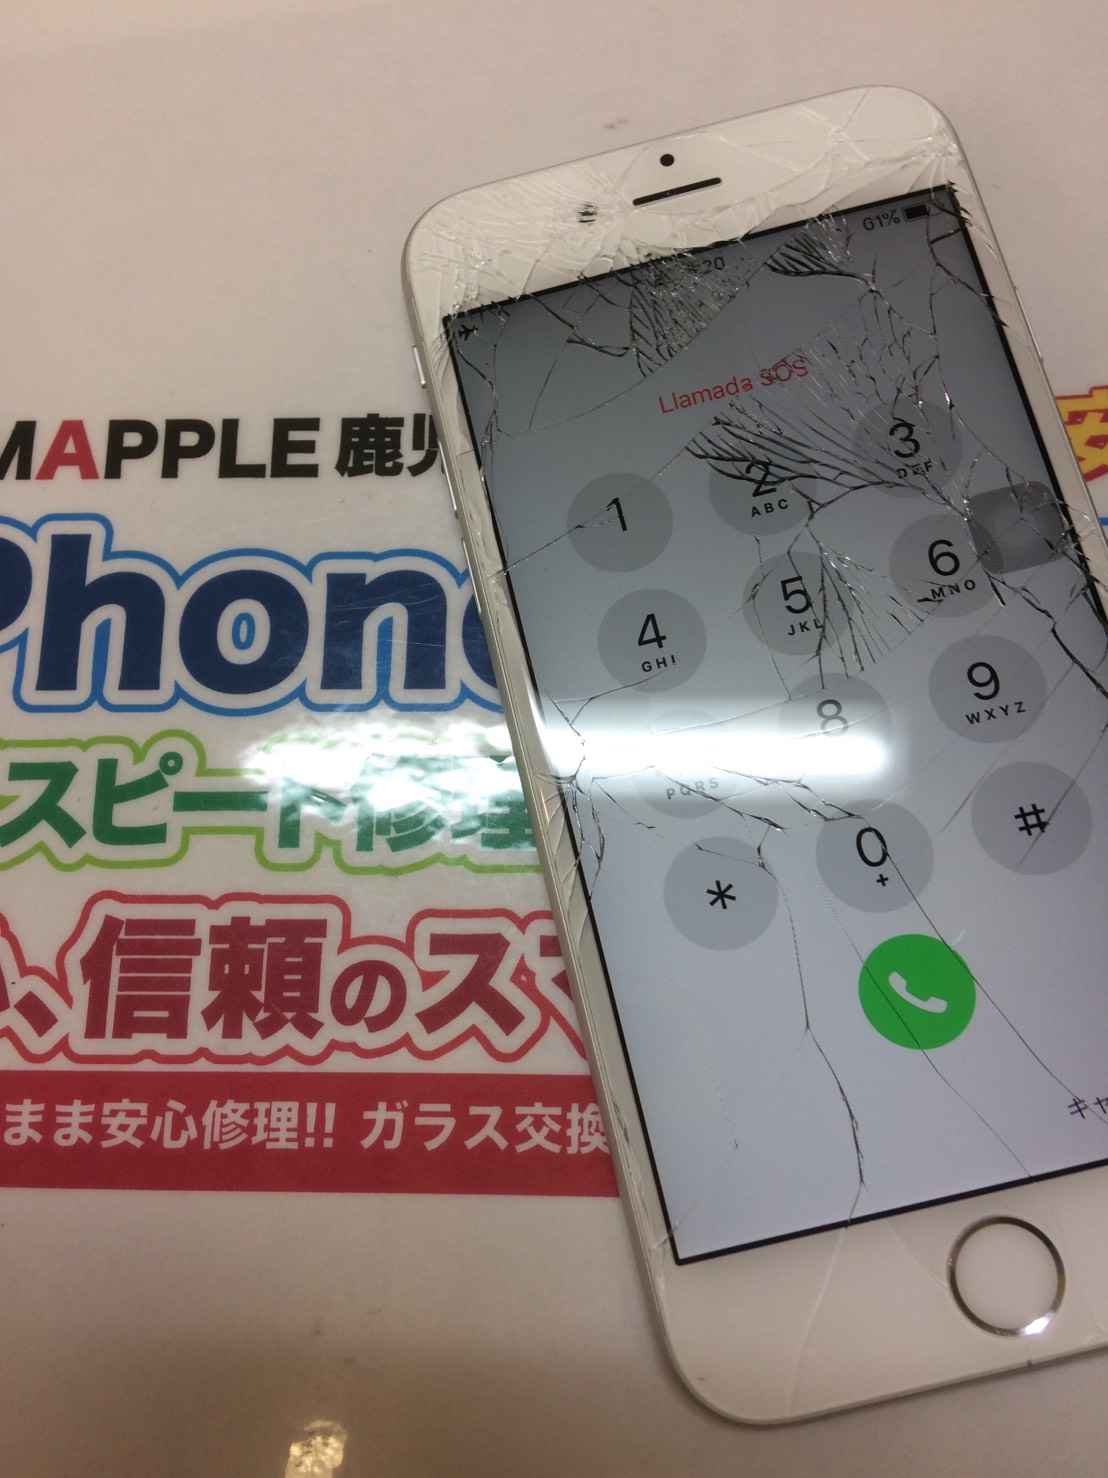 サマーナイトなiphone ぱっり ん Iphone修理を鹿児島でお探しの方ならスマップル鹿児島店